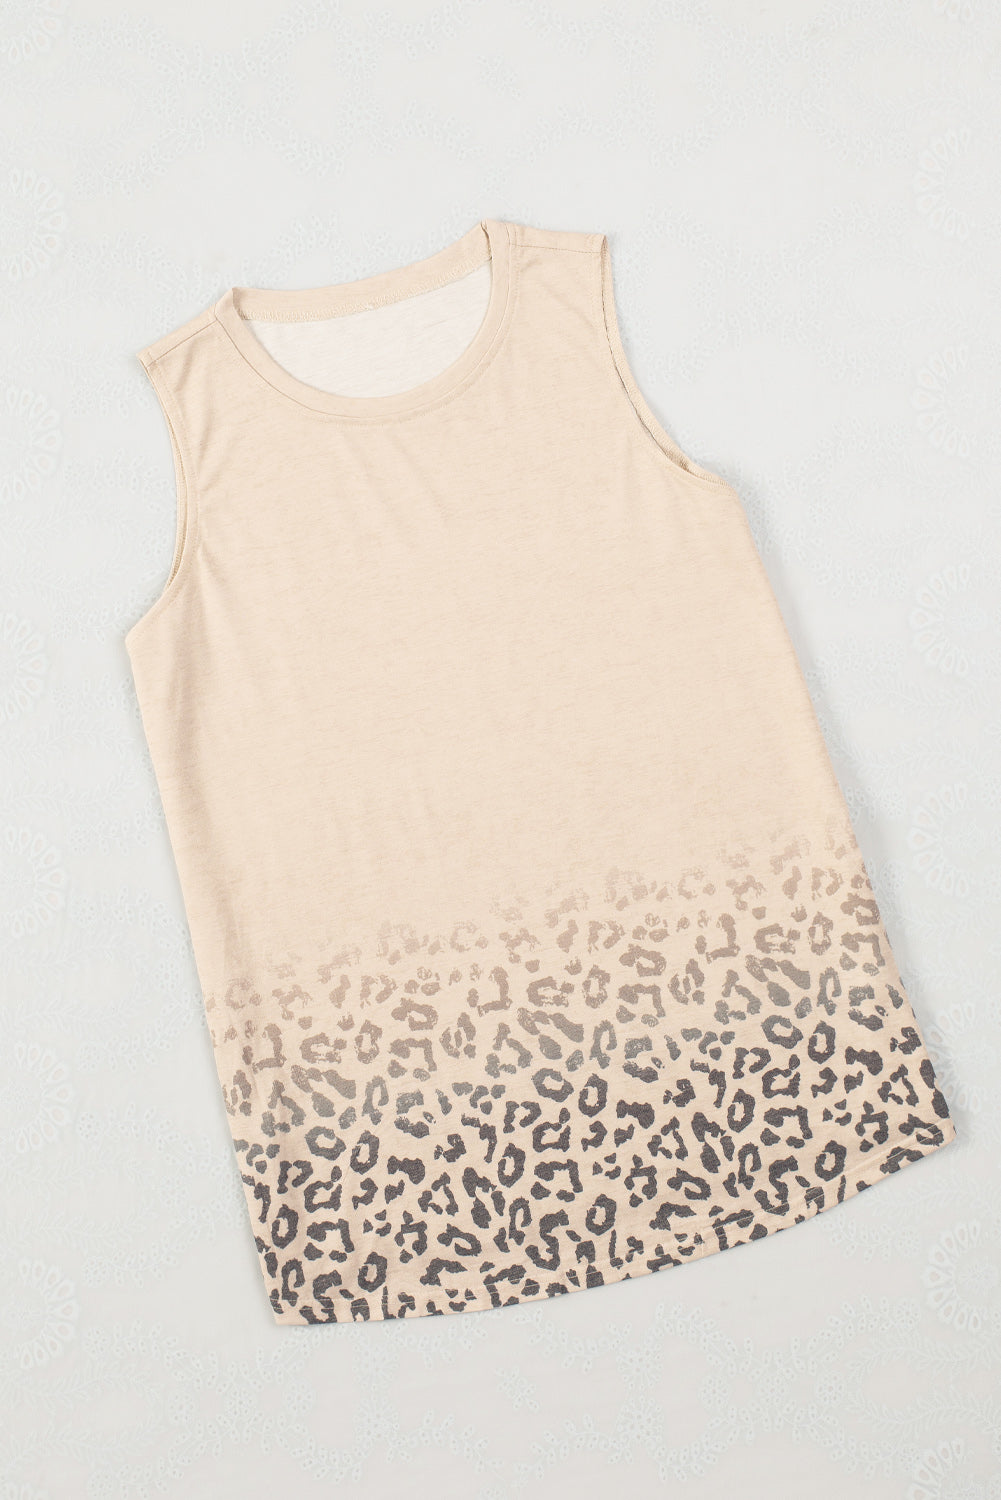 Majica s leopard printom boje marelice